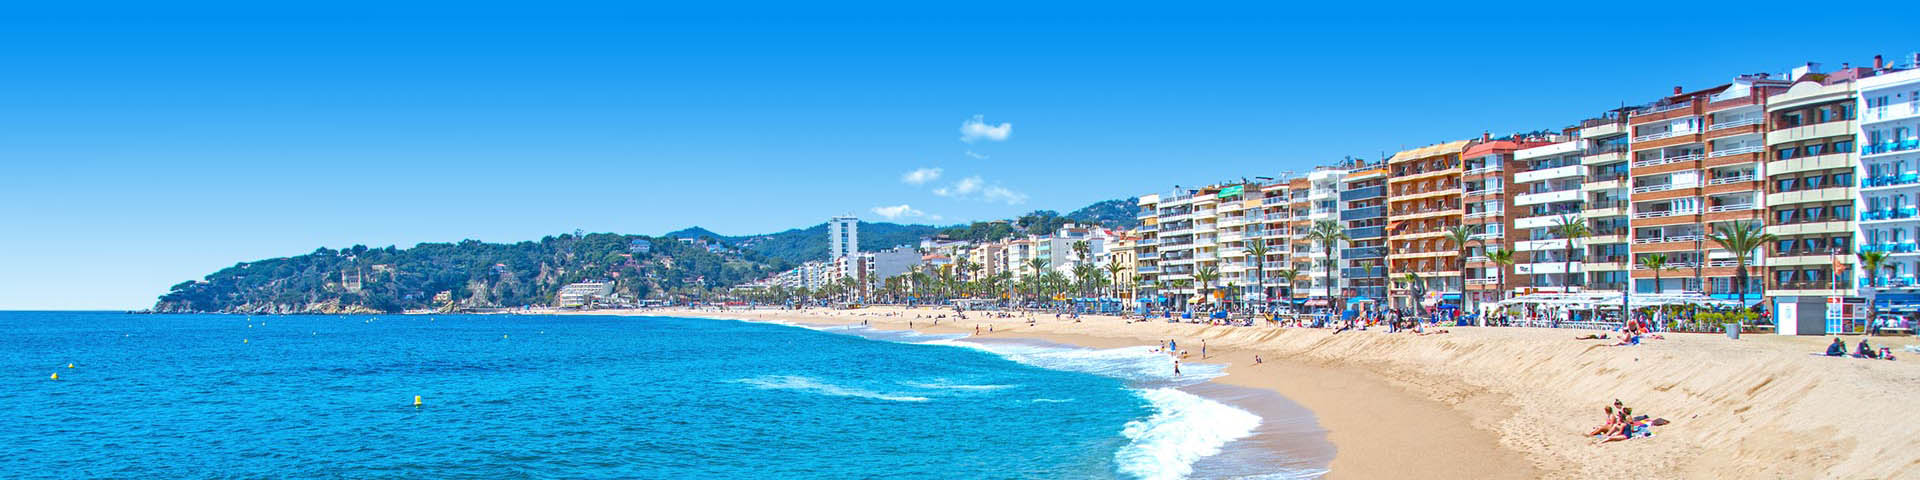 Baai met zandstrand, zee en hotels aan zee in Spanje